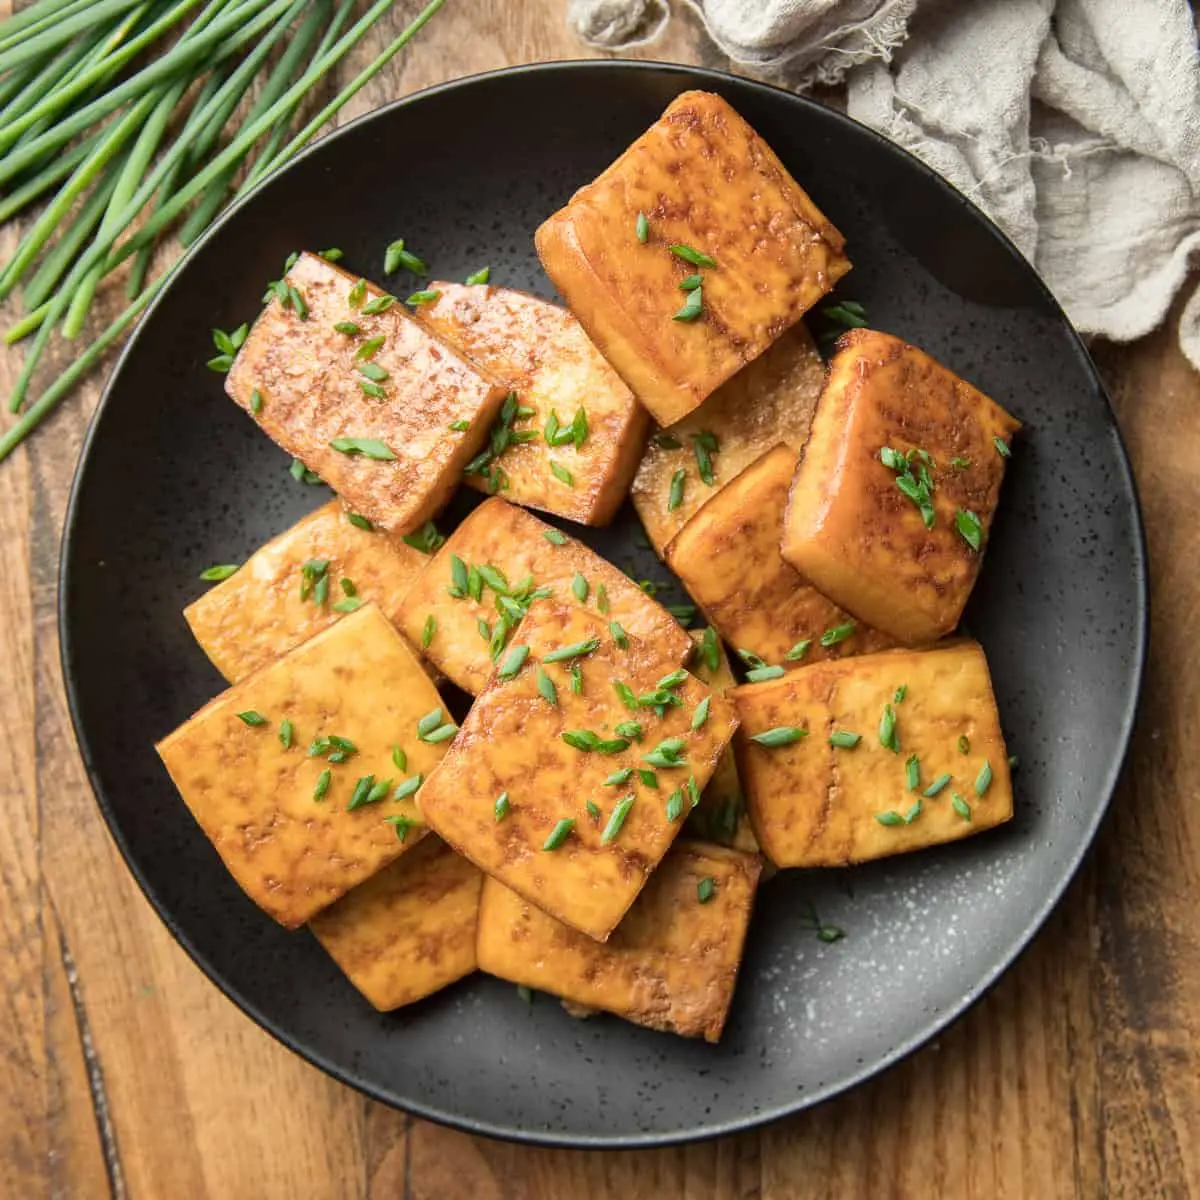 smoked tofu recipe - Do I need to soak tofu before cooking